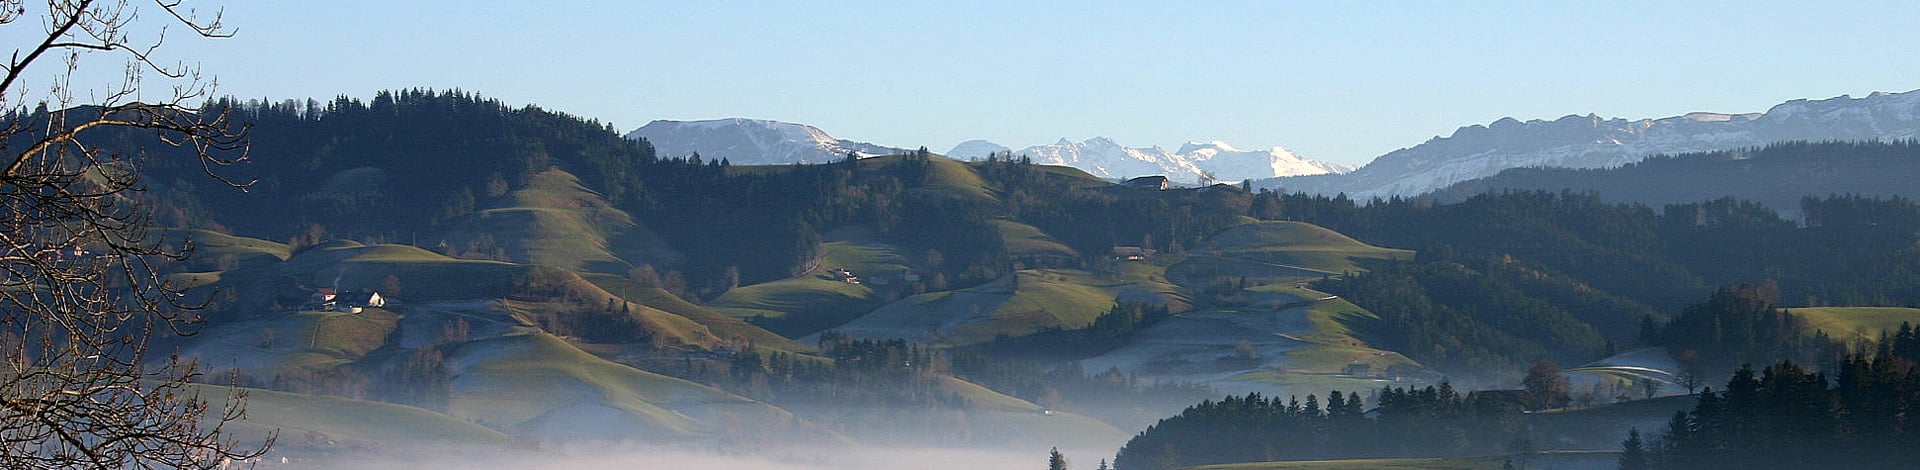 regione di Willisau-Entlebuch